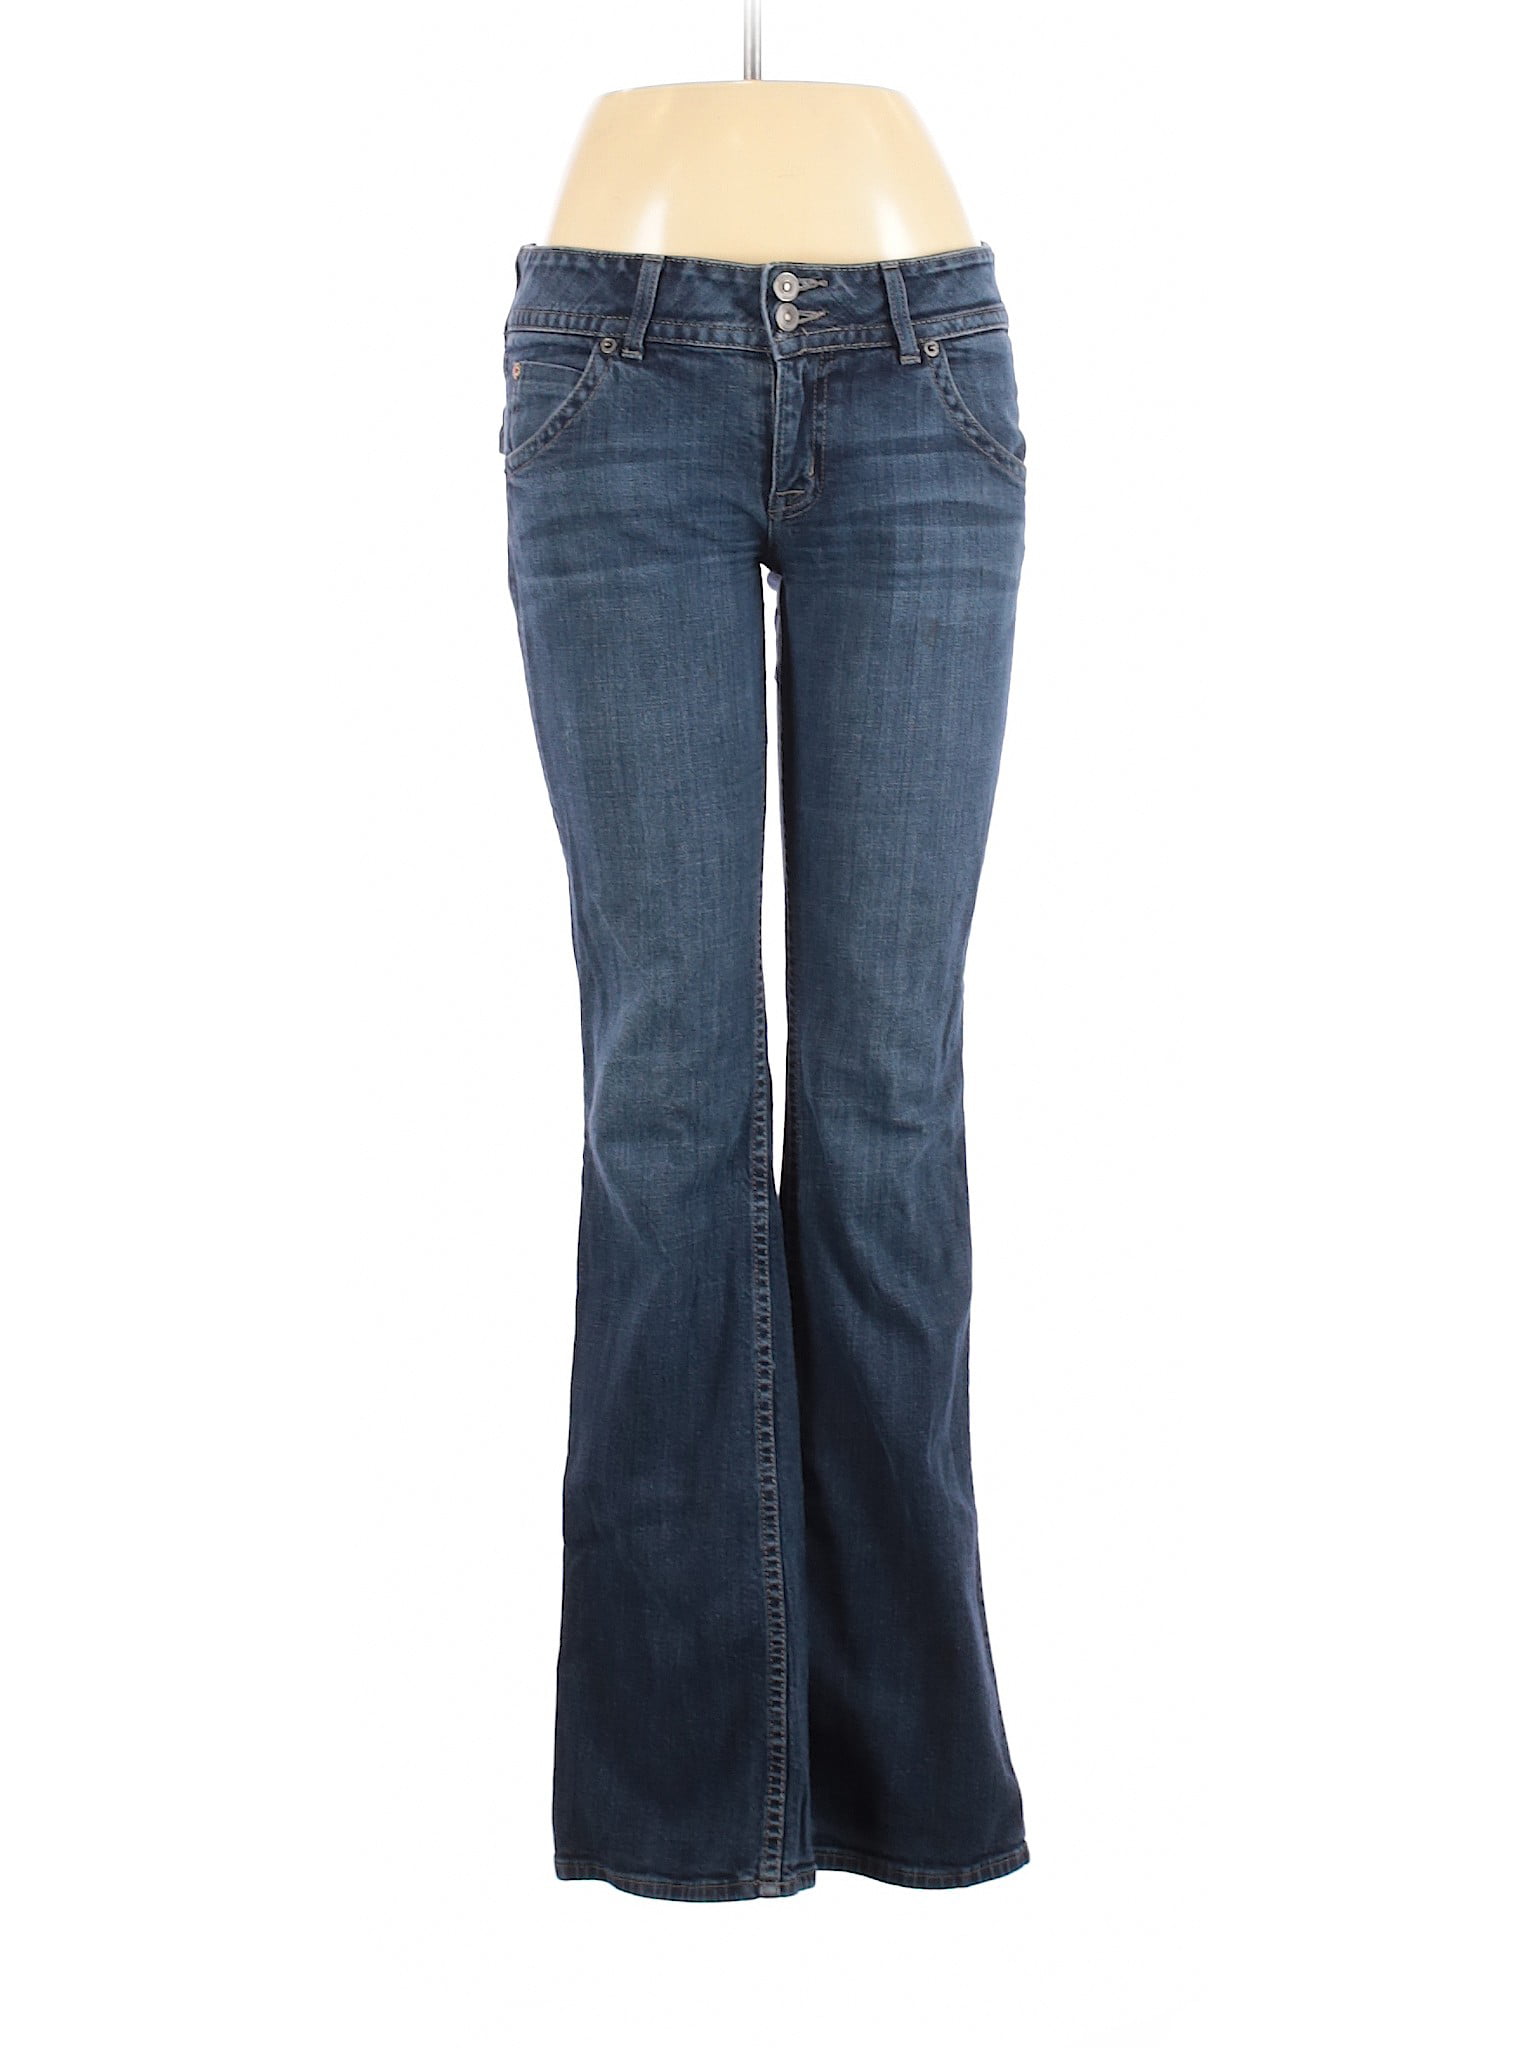 Hudson Jeans - Pre-Owned Hudson Jeans Women's Size 29W Jeans - Walmart ...